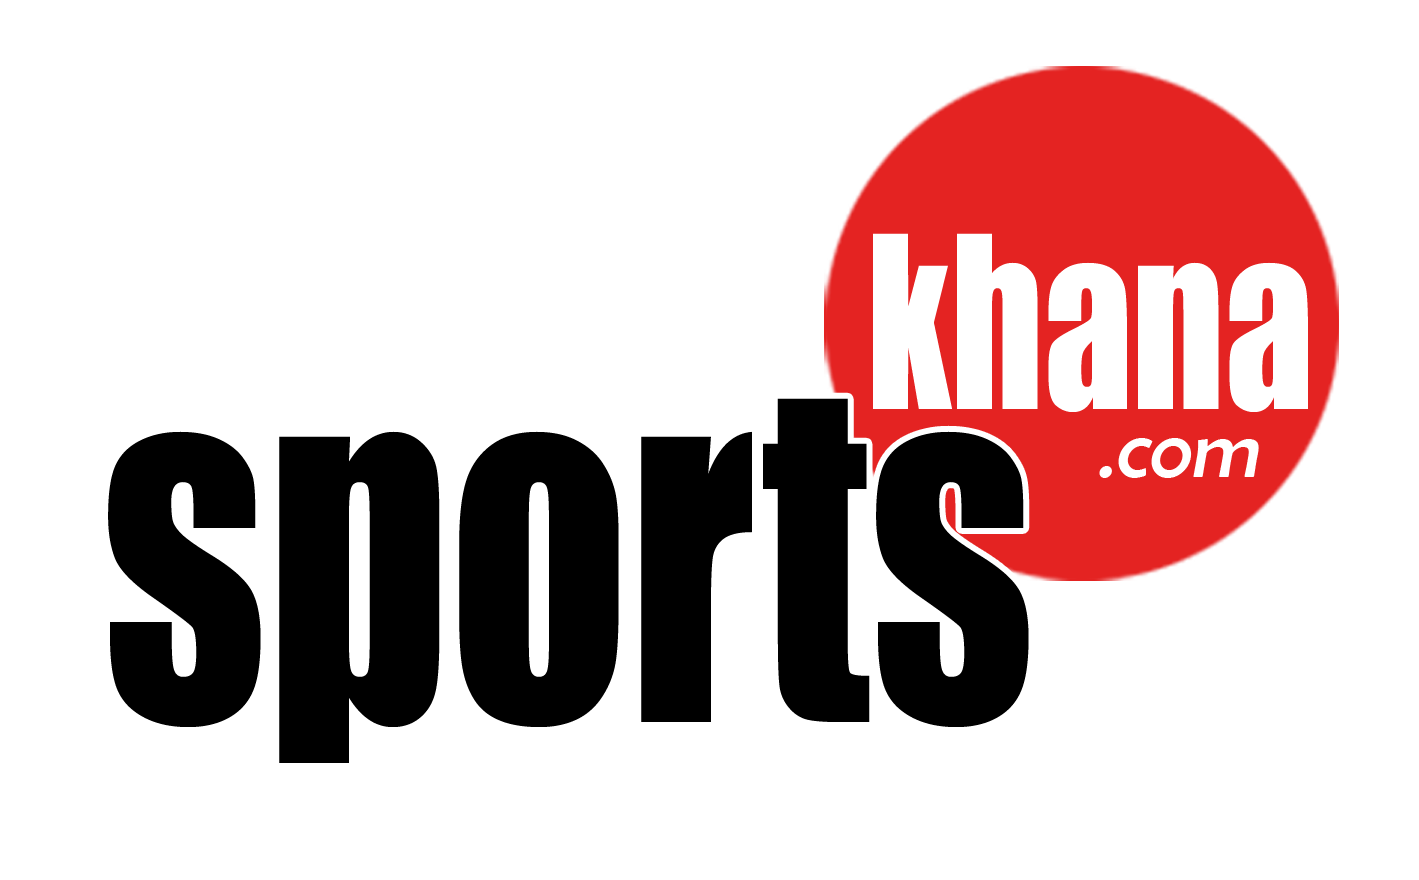 sports khana